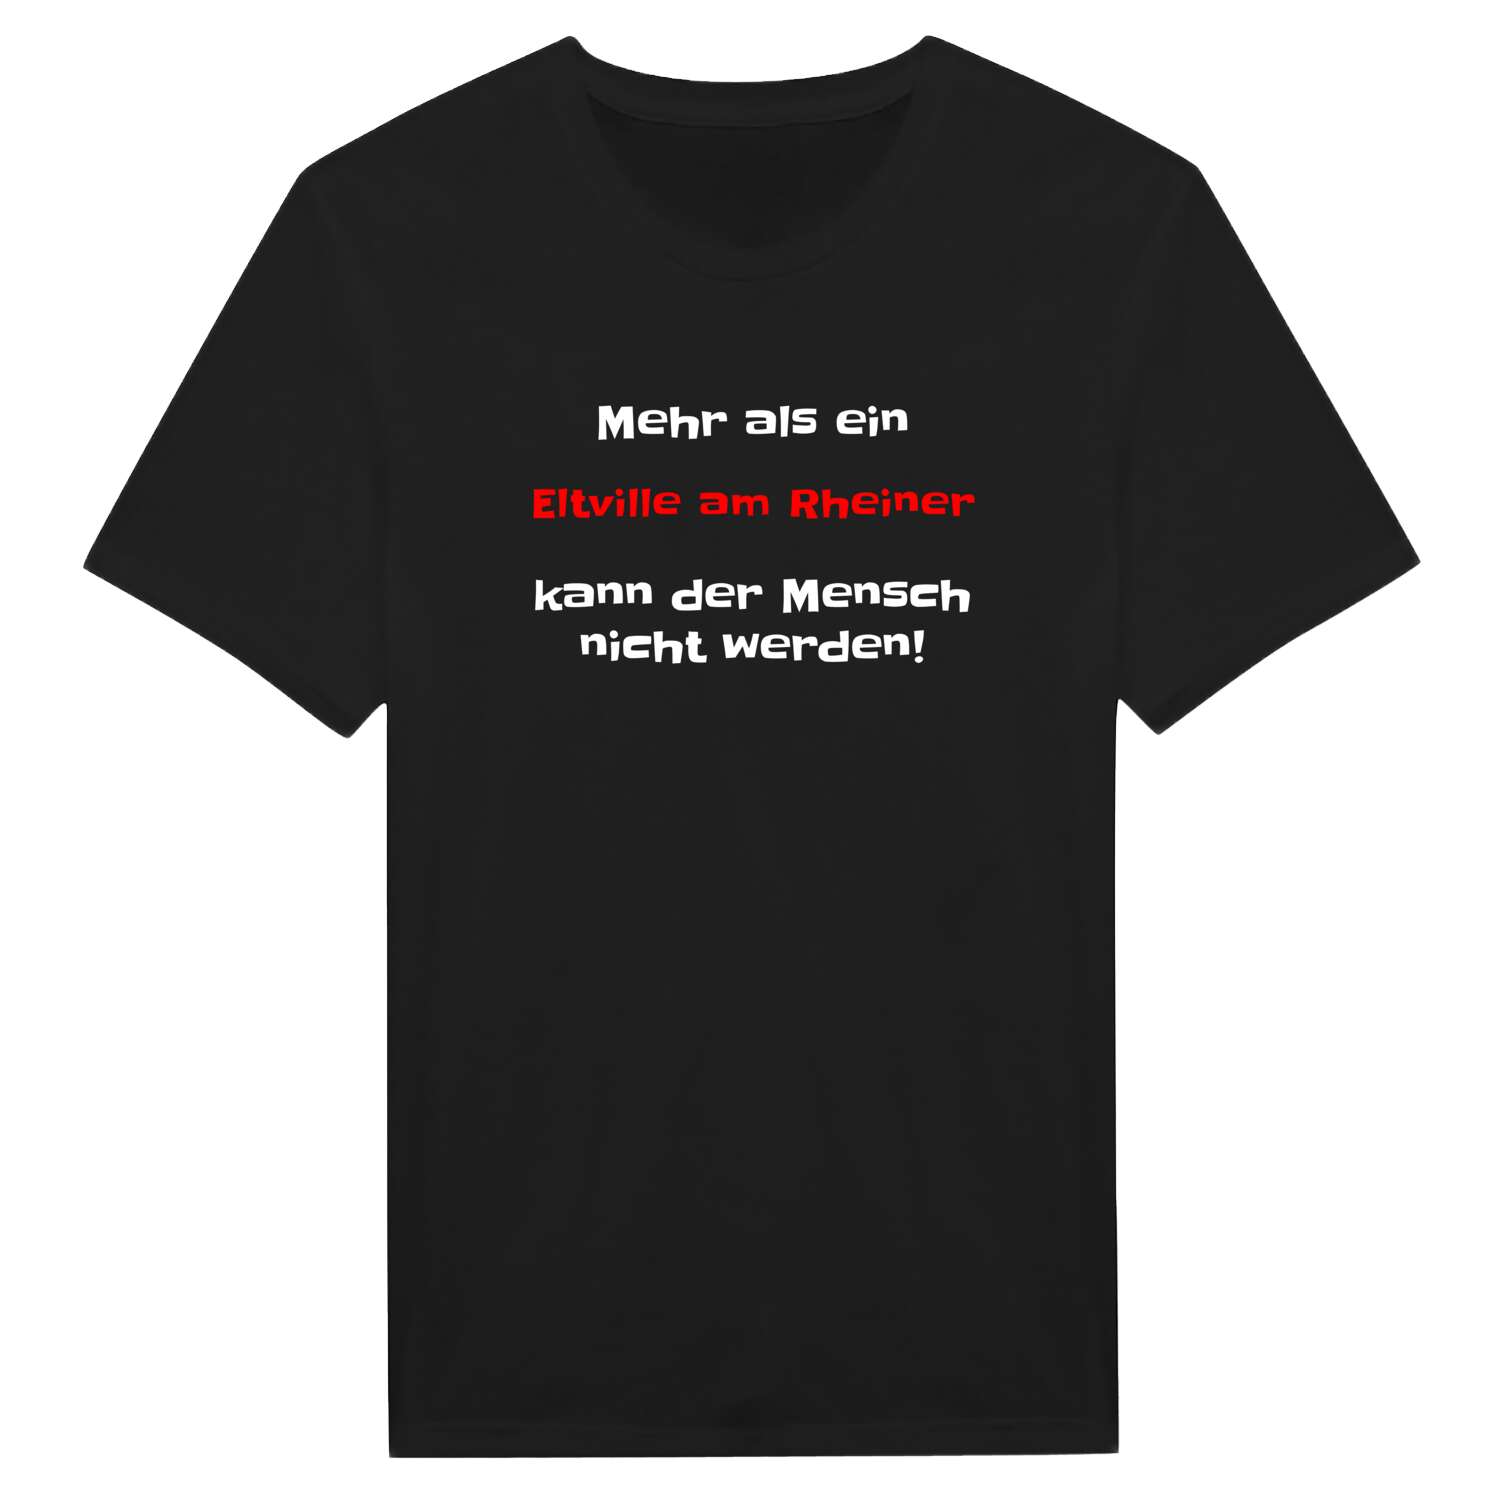 Eltville am Rhein T-Shirt »Mehr als ein«